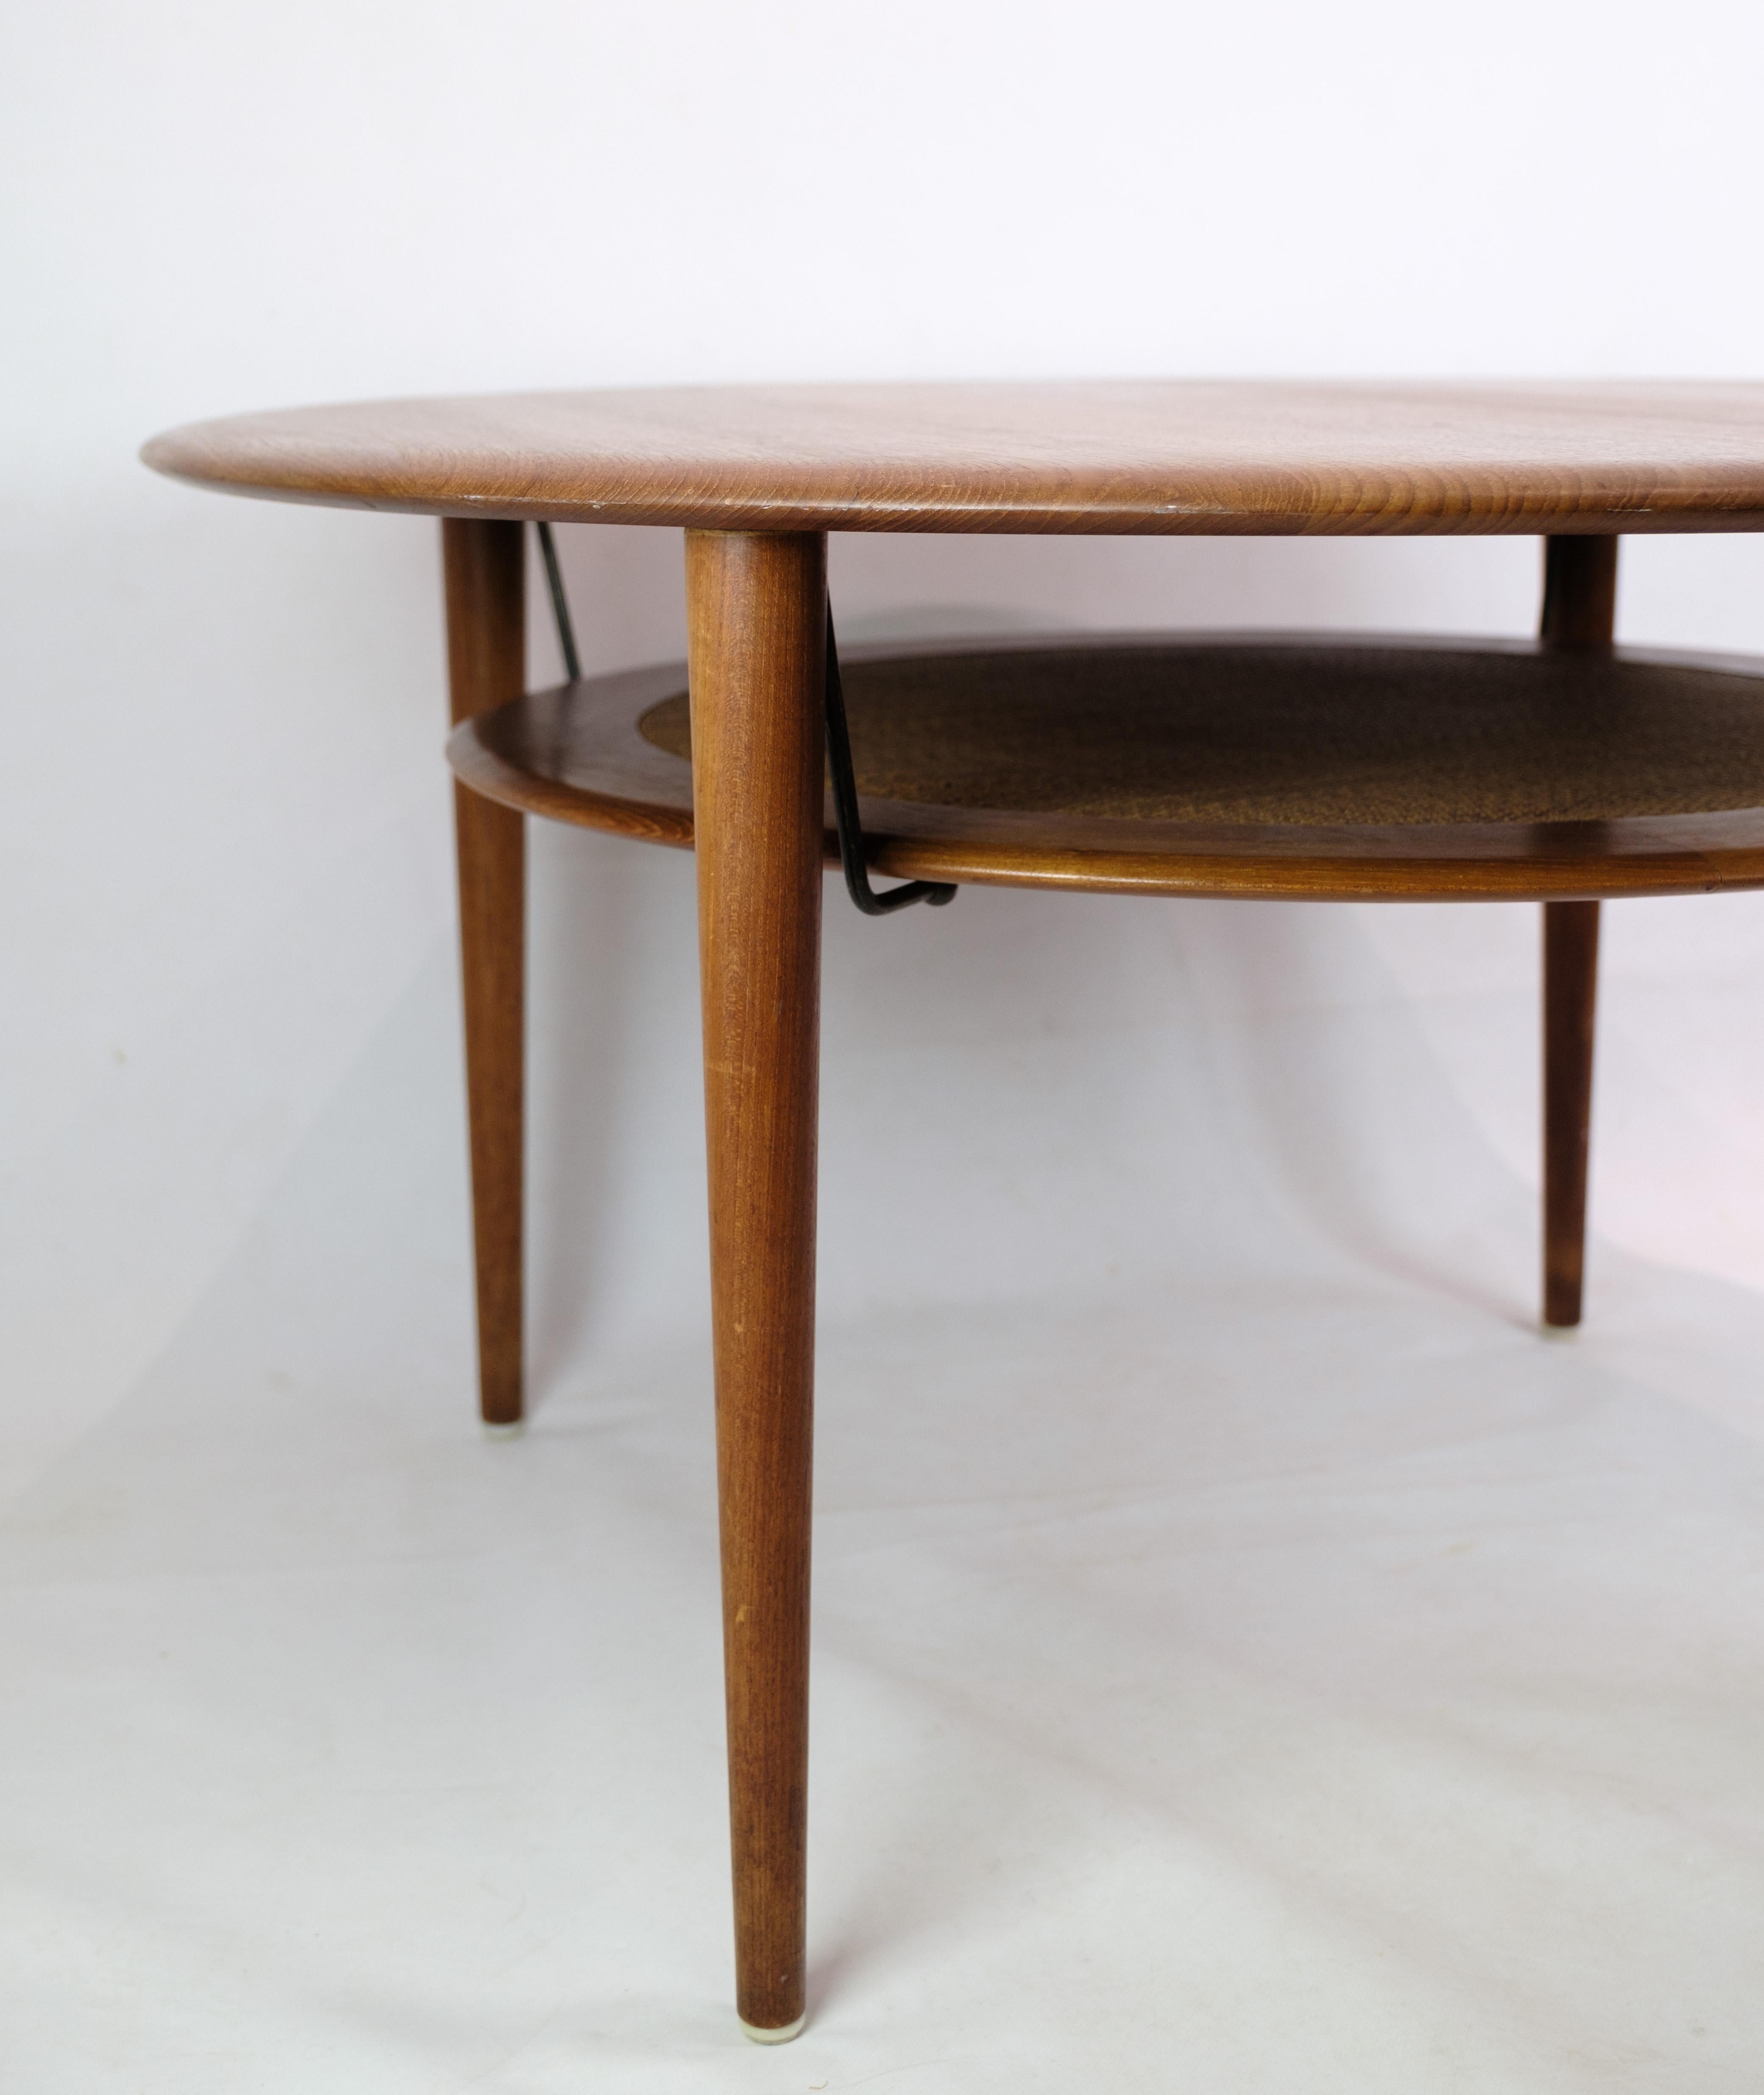 Table basse, modèle FD 515, conçue par Peter Hvidt 1916-1986 & Orla Mølgaard-Nielsen 1907-1993 en bois de teck à partir de 1956. La table basse est équipée d'une étagère à journaux en osier et de ferrures en laiton. Fabriqué par le fabricant France. 